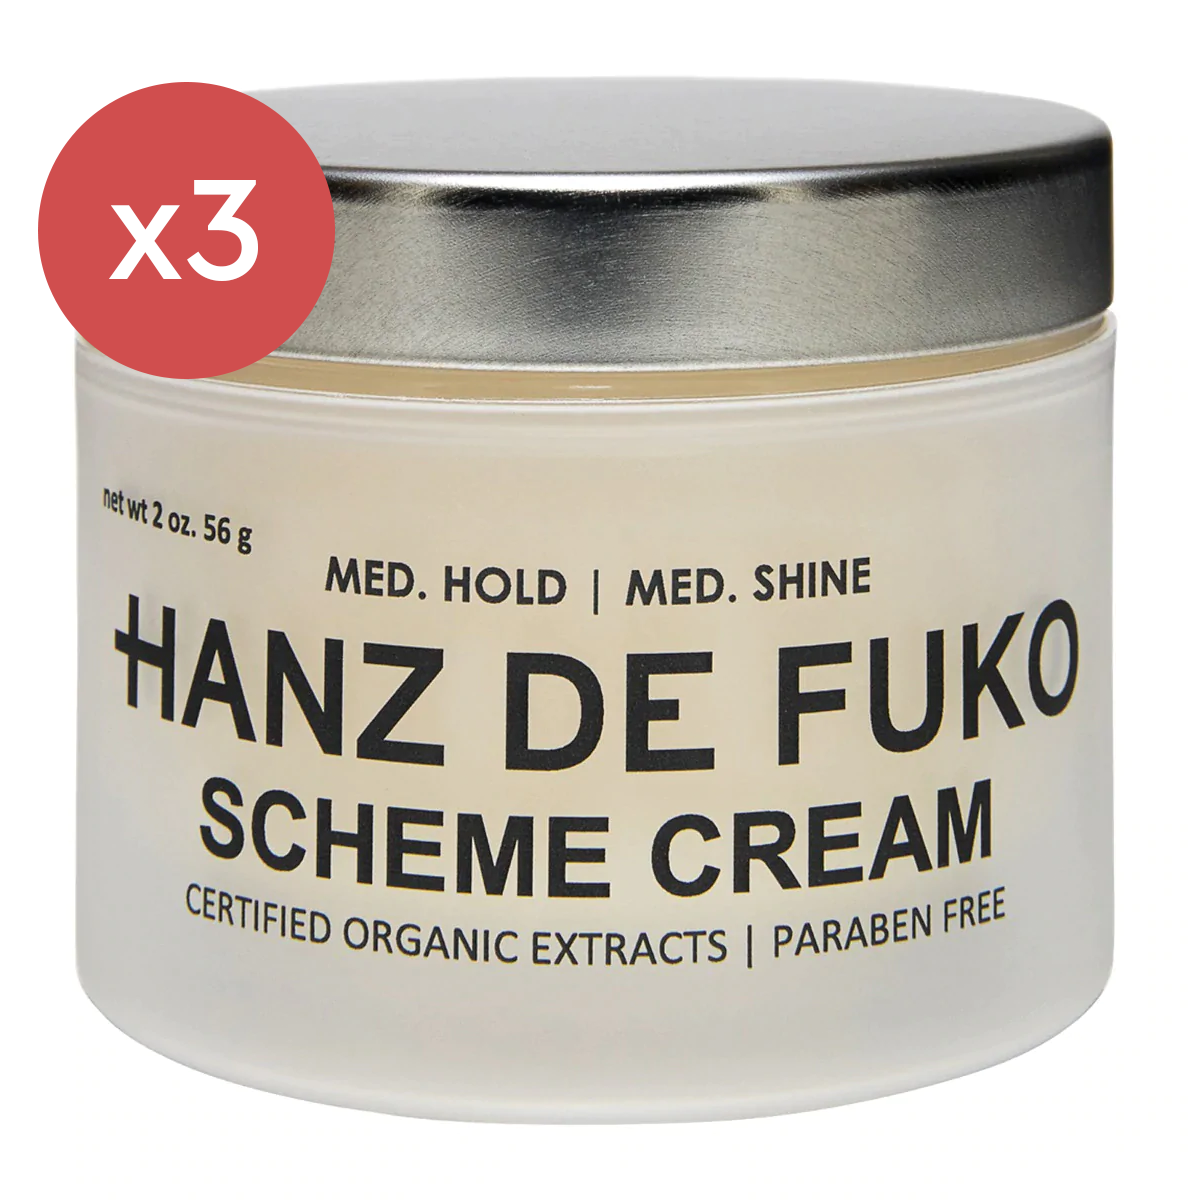 Hanz De Fuko Scheme Cream Trio Bundle